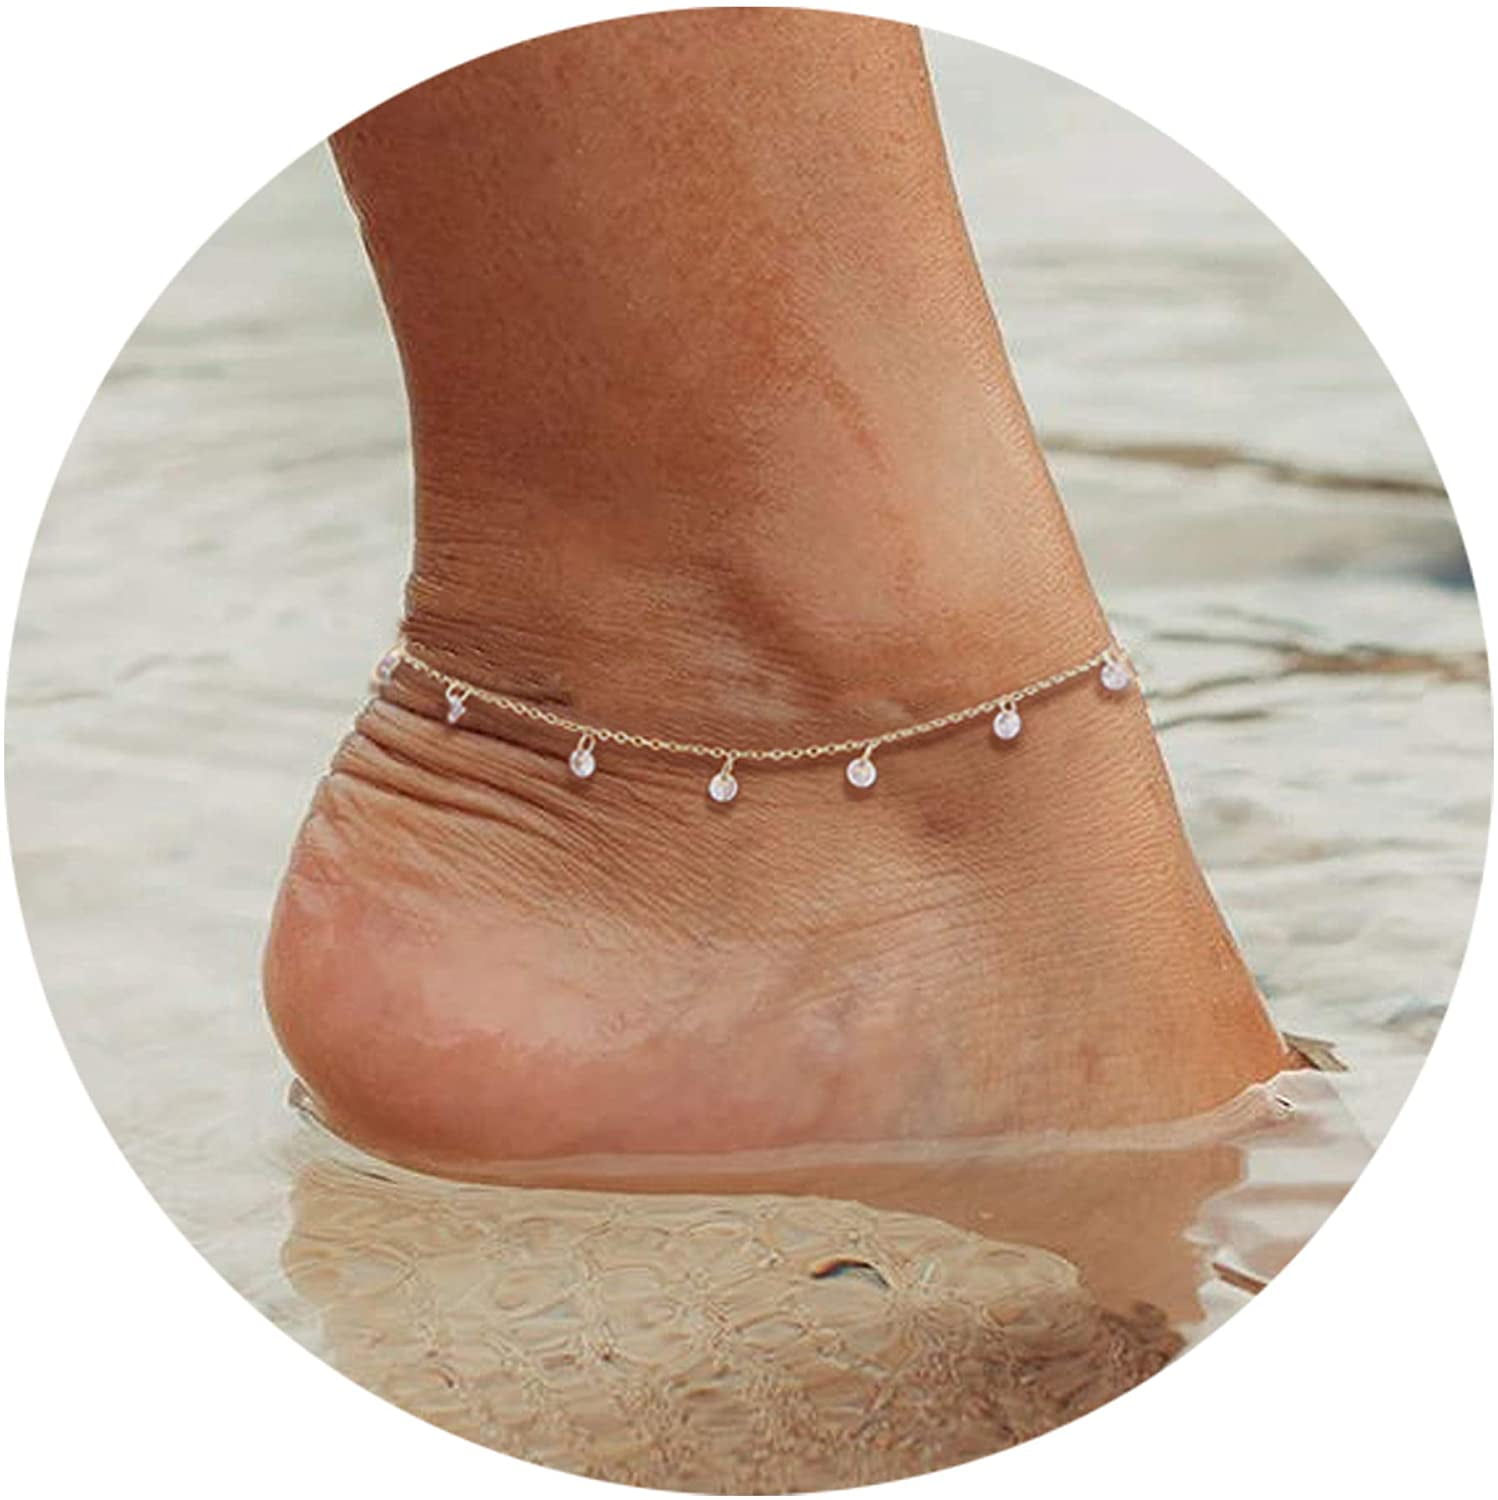 Pearl 14kt goldfilled anklet